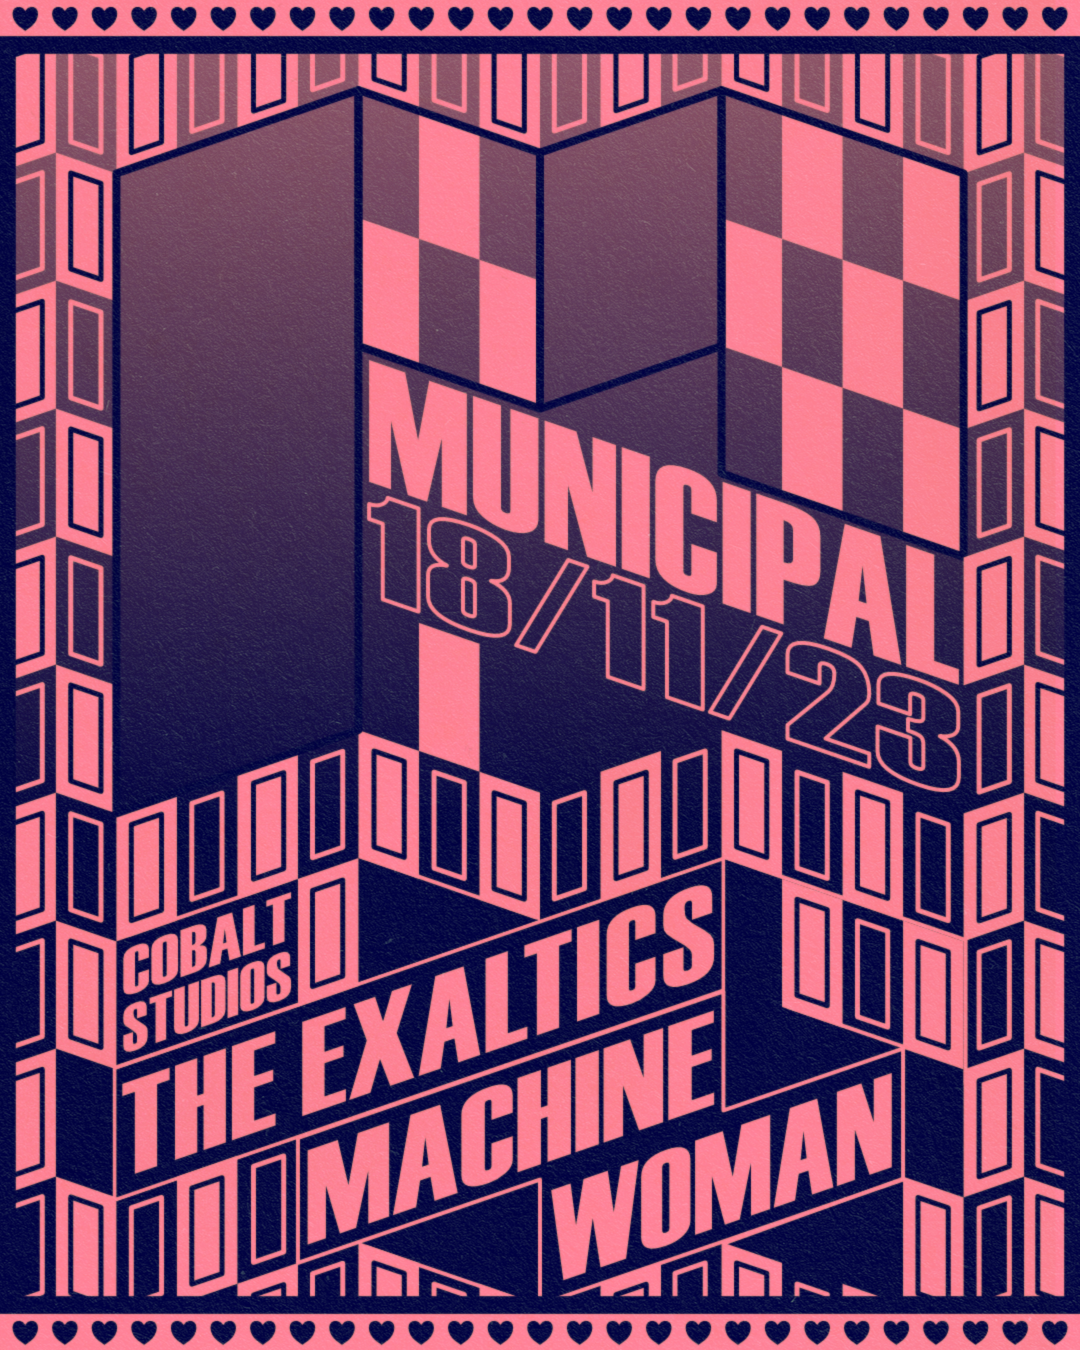 Municipal: The Exaltics LIVE + Machine Woman - フライヤー表